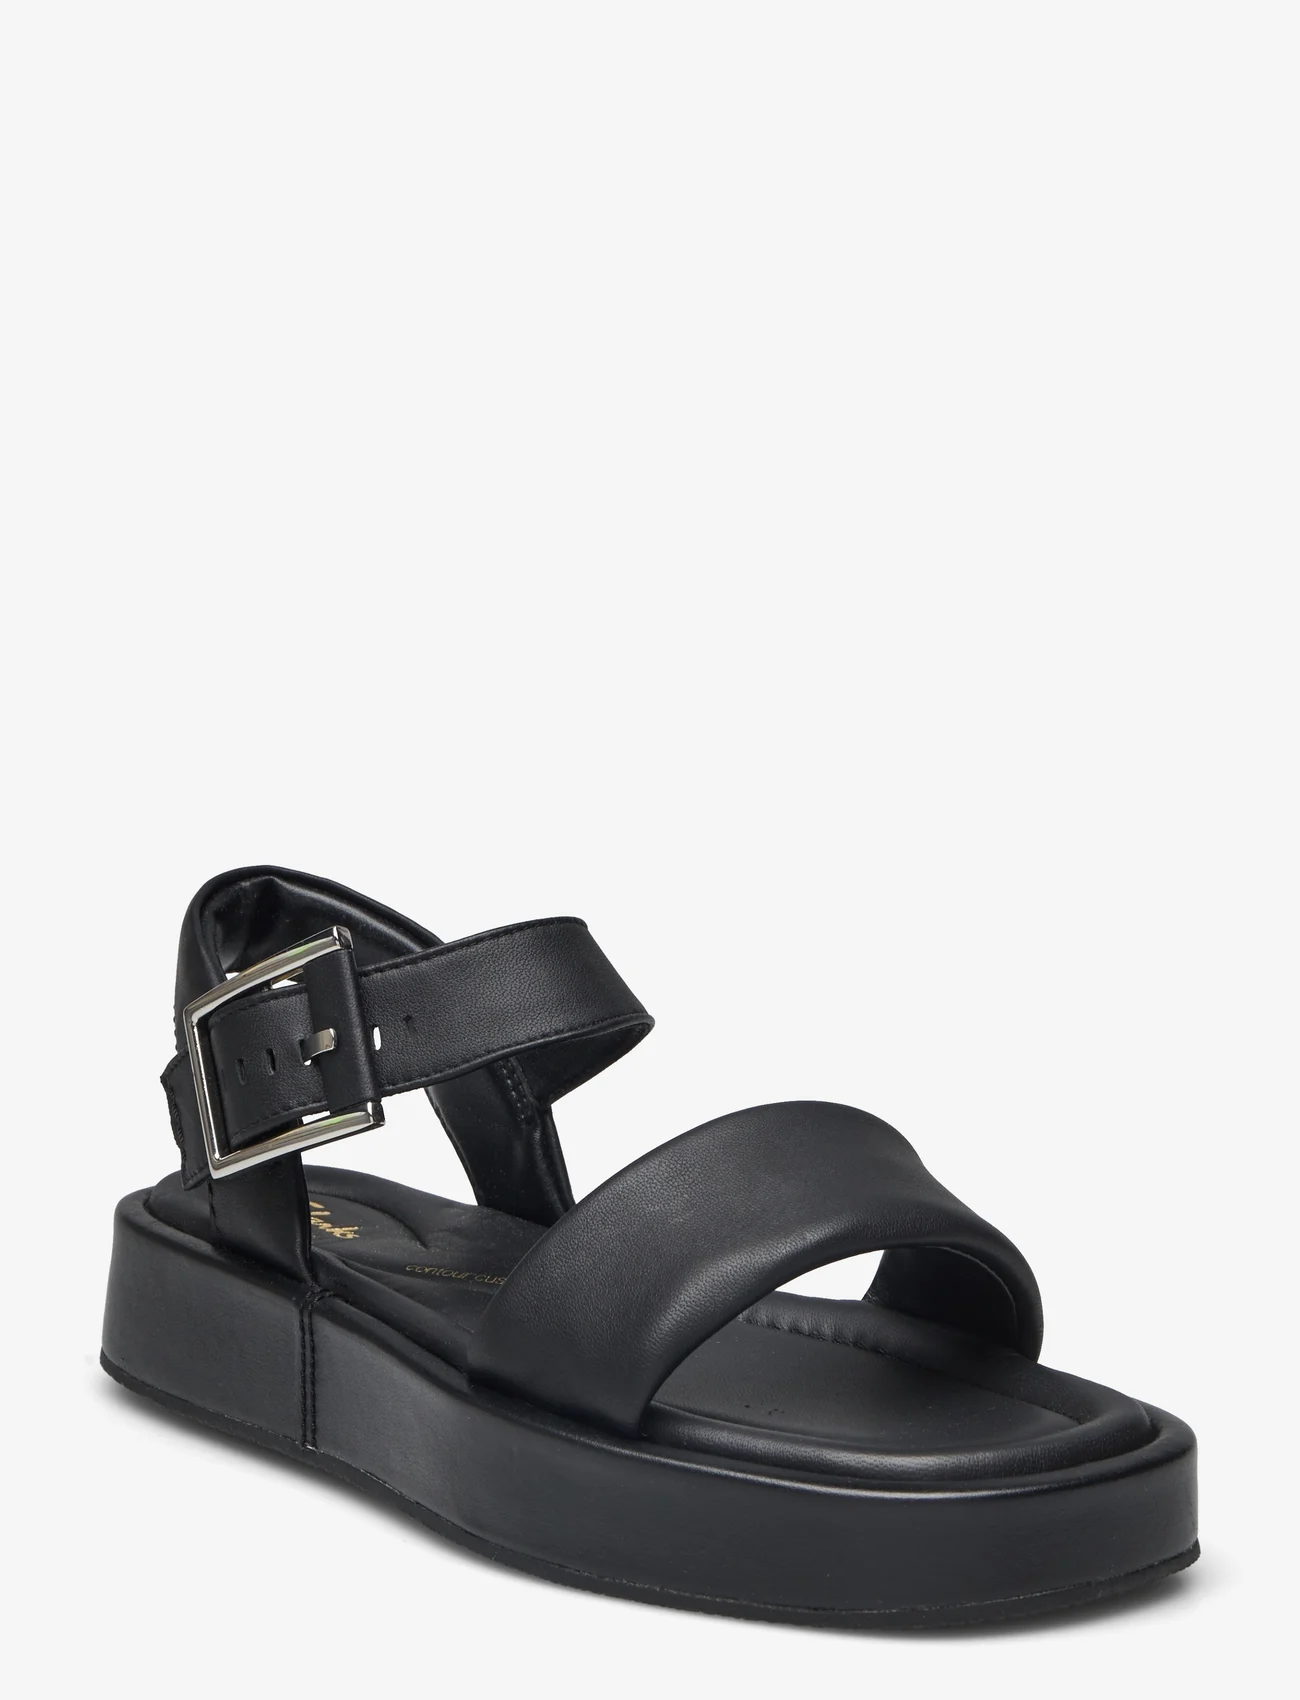 Clarks - Alda Strap D - flat sandals - 1216 black leather - 0